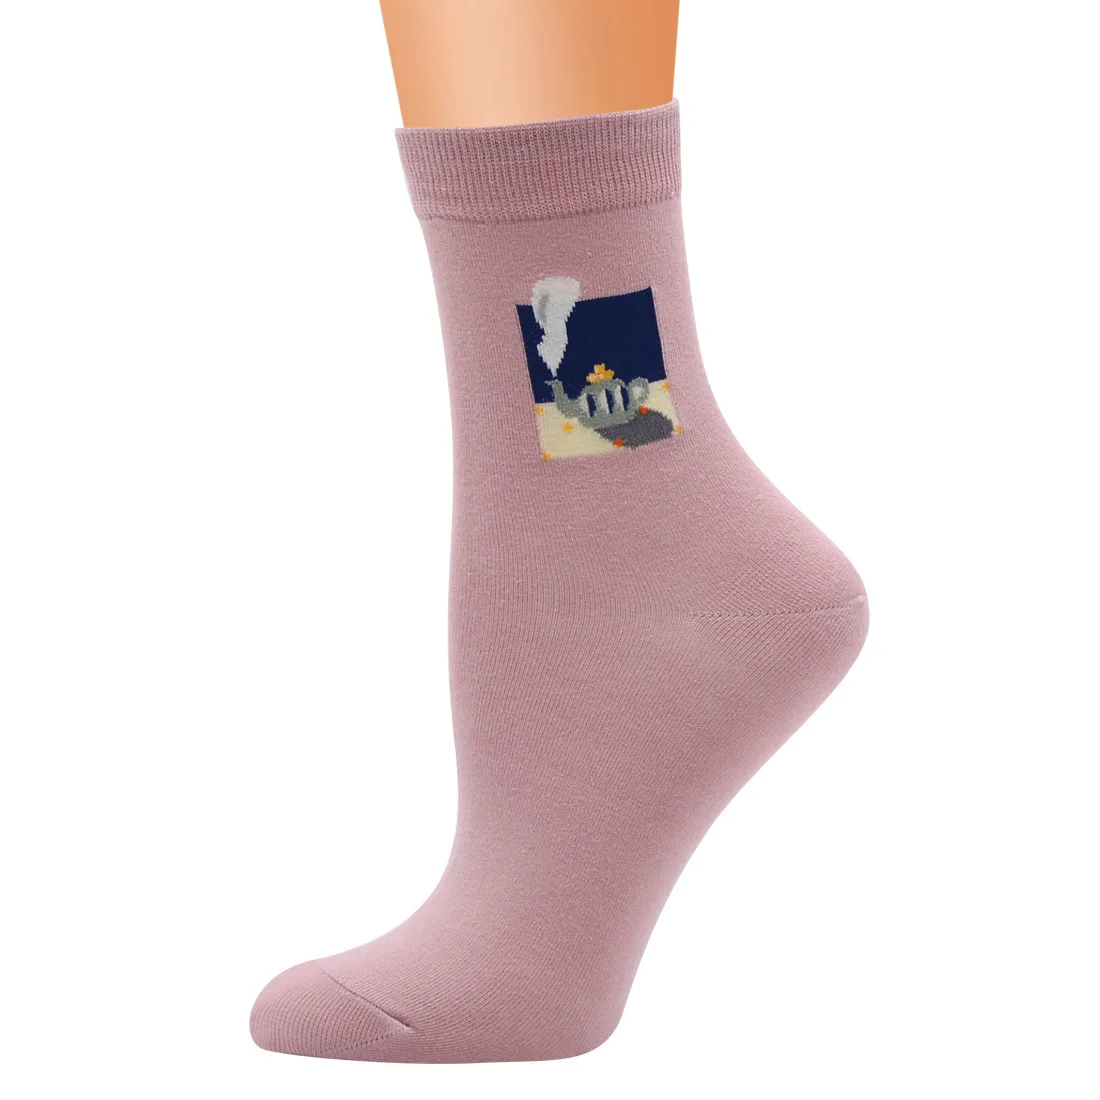 Цветок Плантлайф креативные носки Графический Mountain Для мужчин Для женщин в милый горошек длинные хлопковые носки новинка полосатые носки